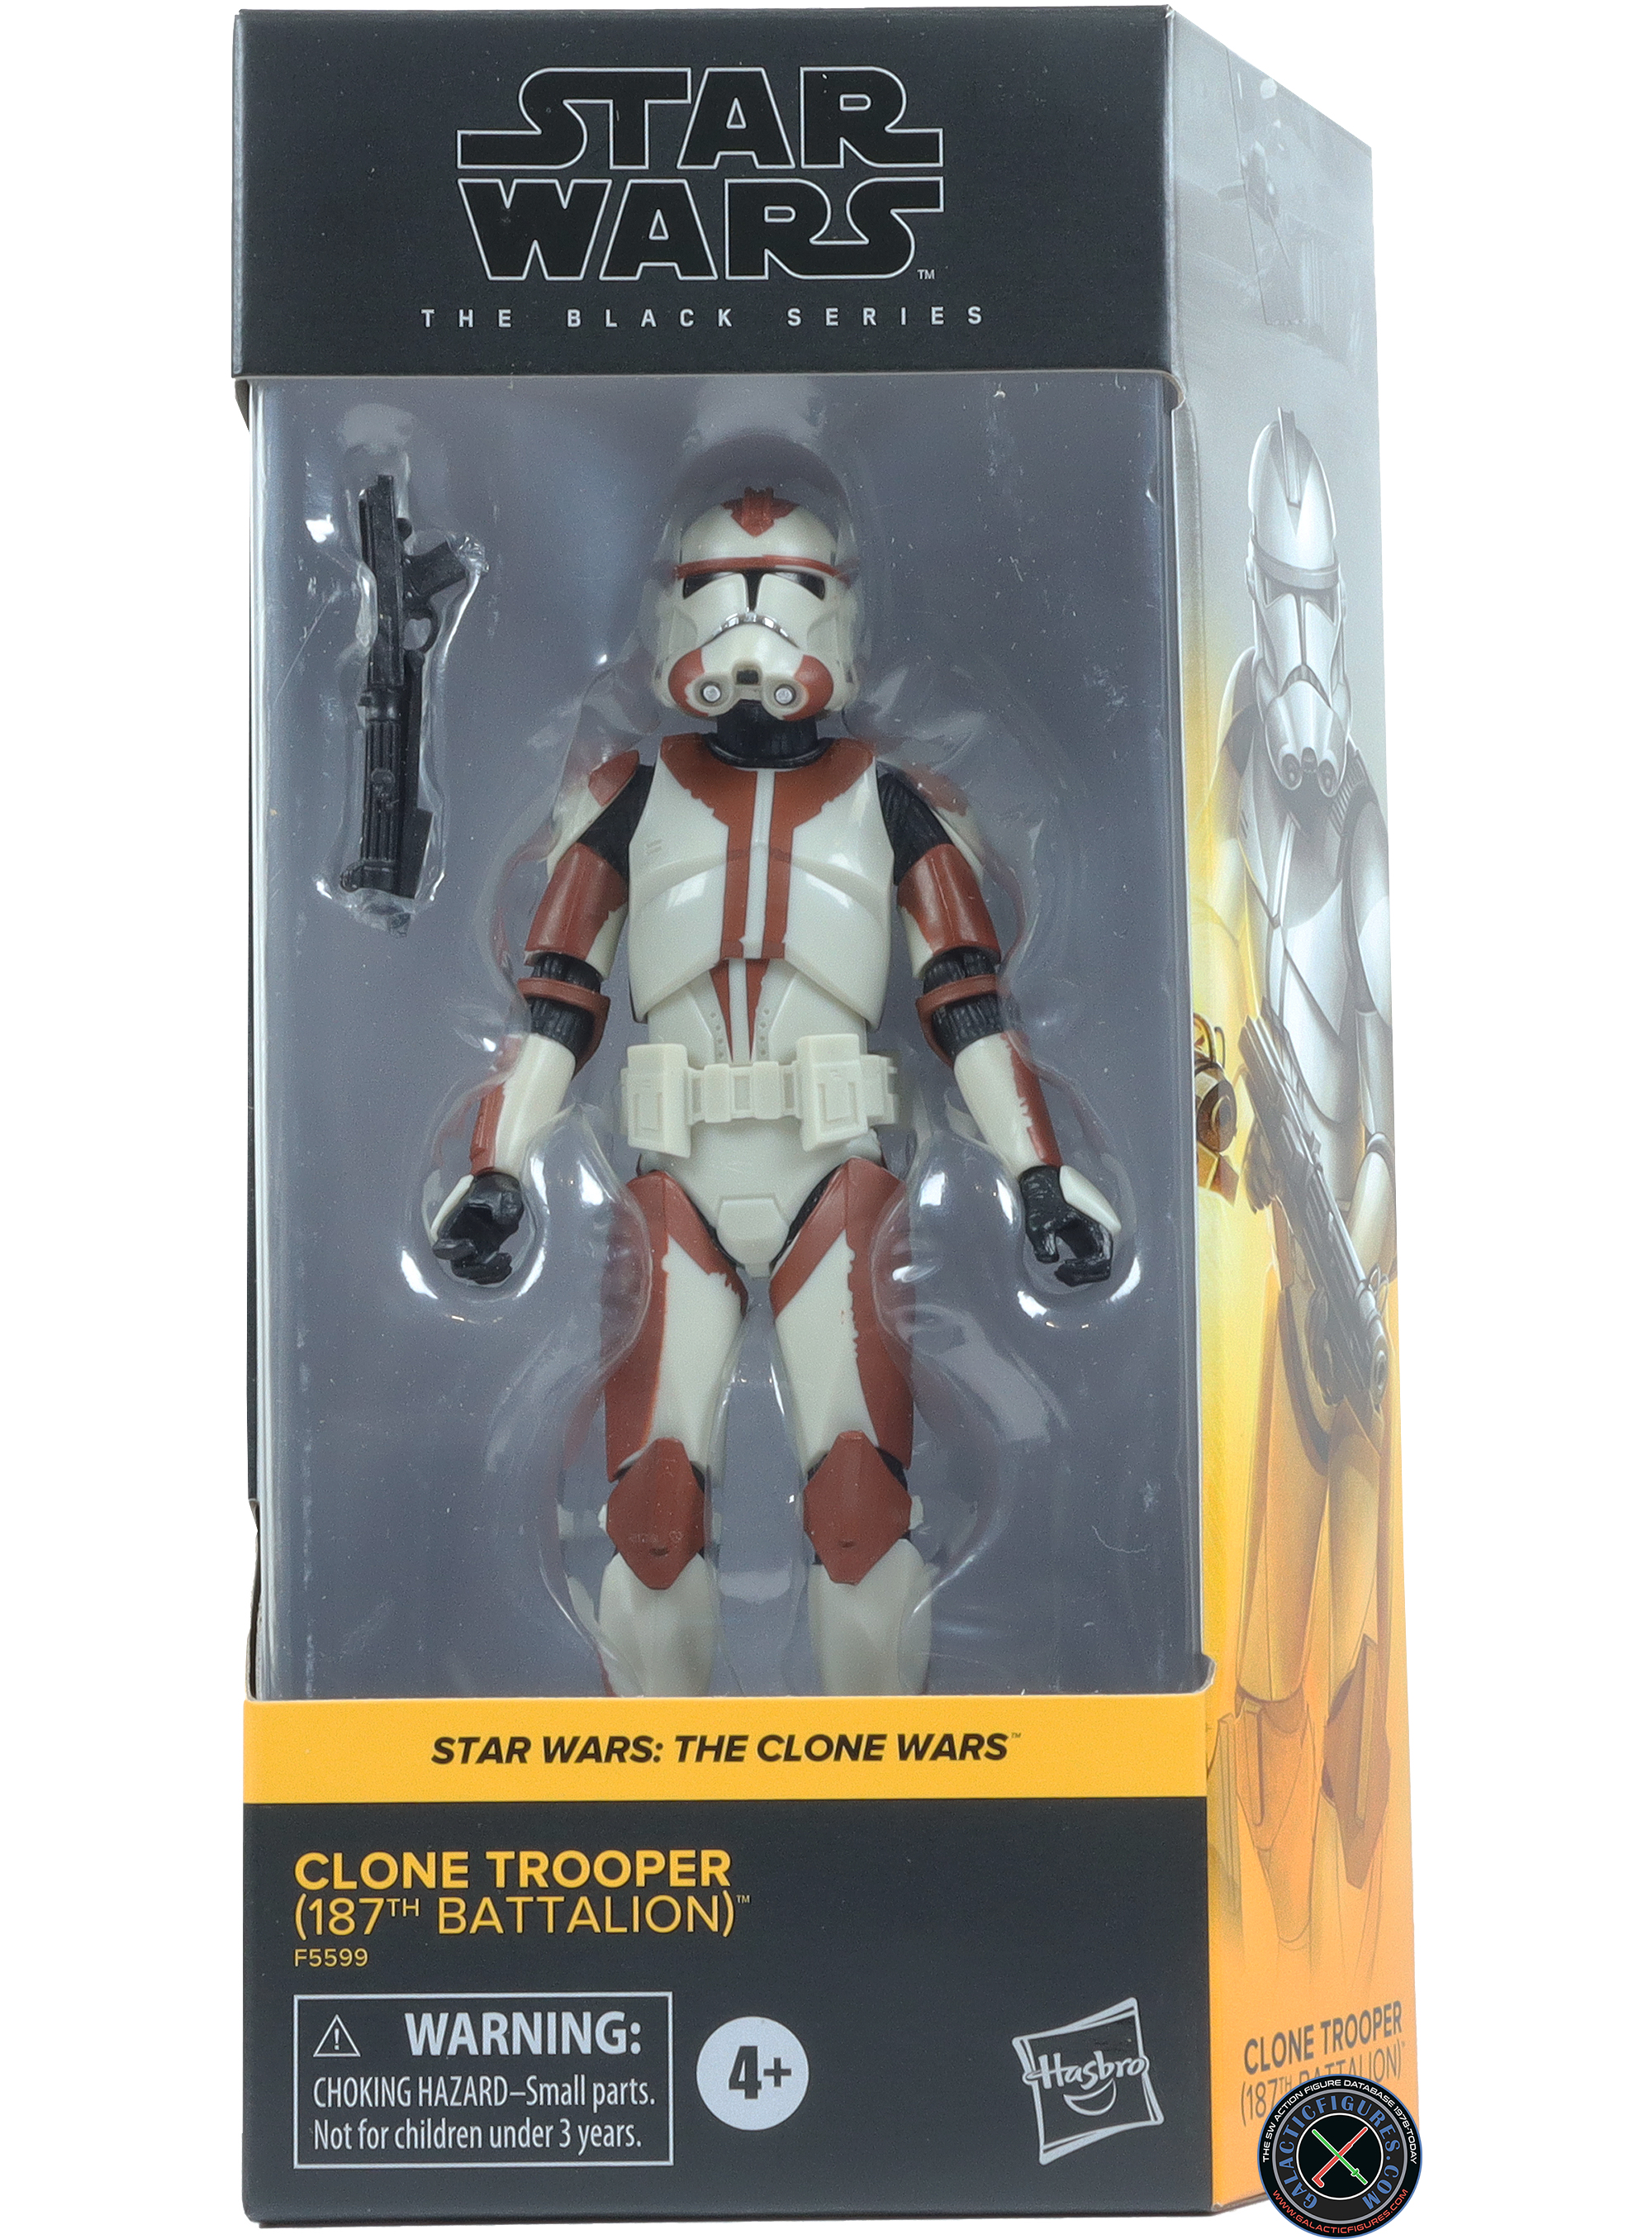 Clone Trooper 187th Battalion